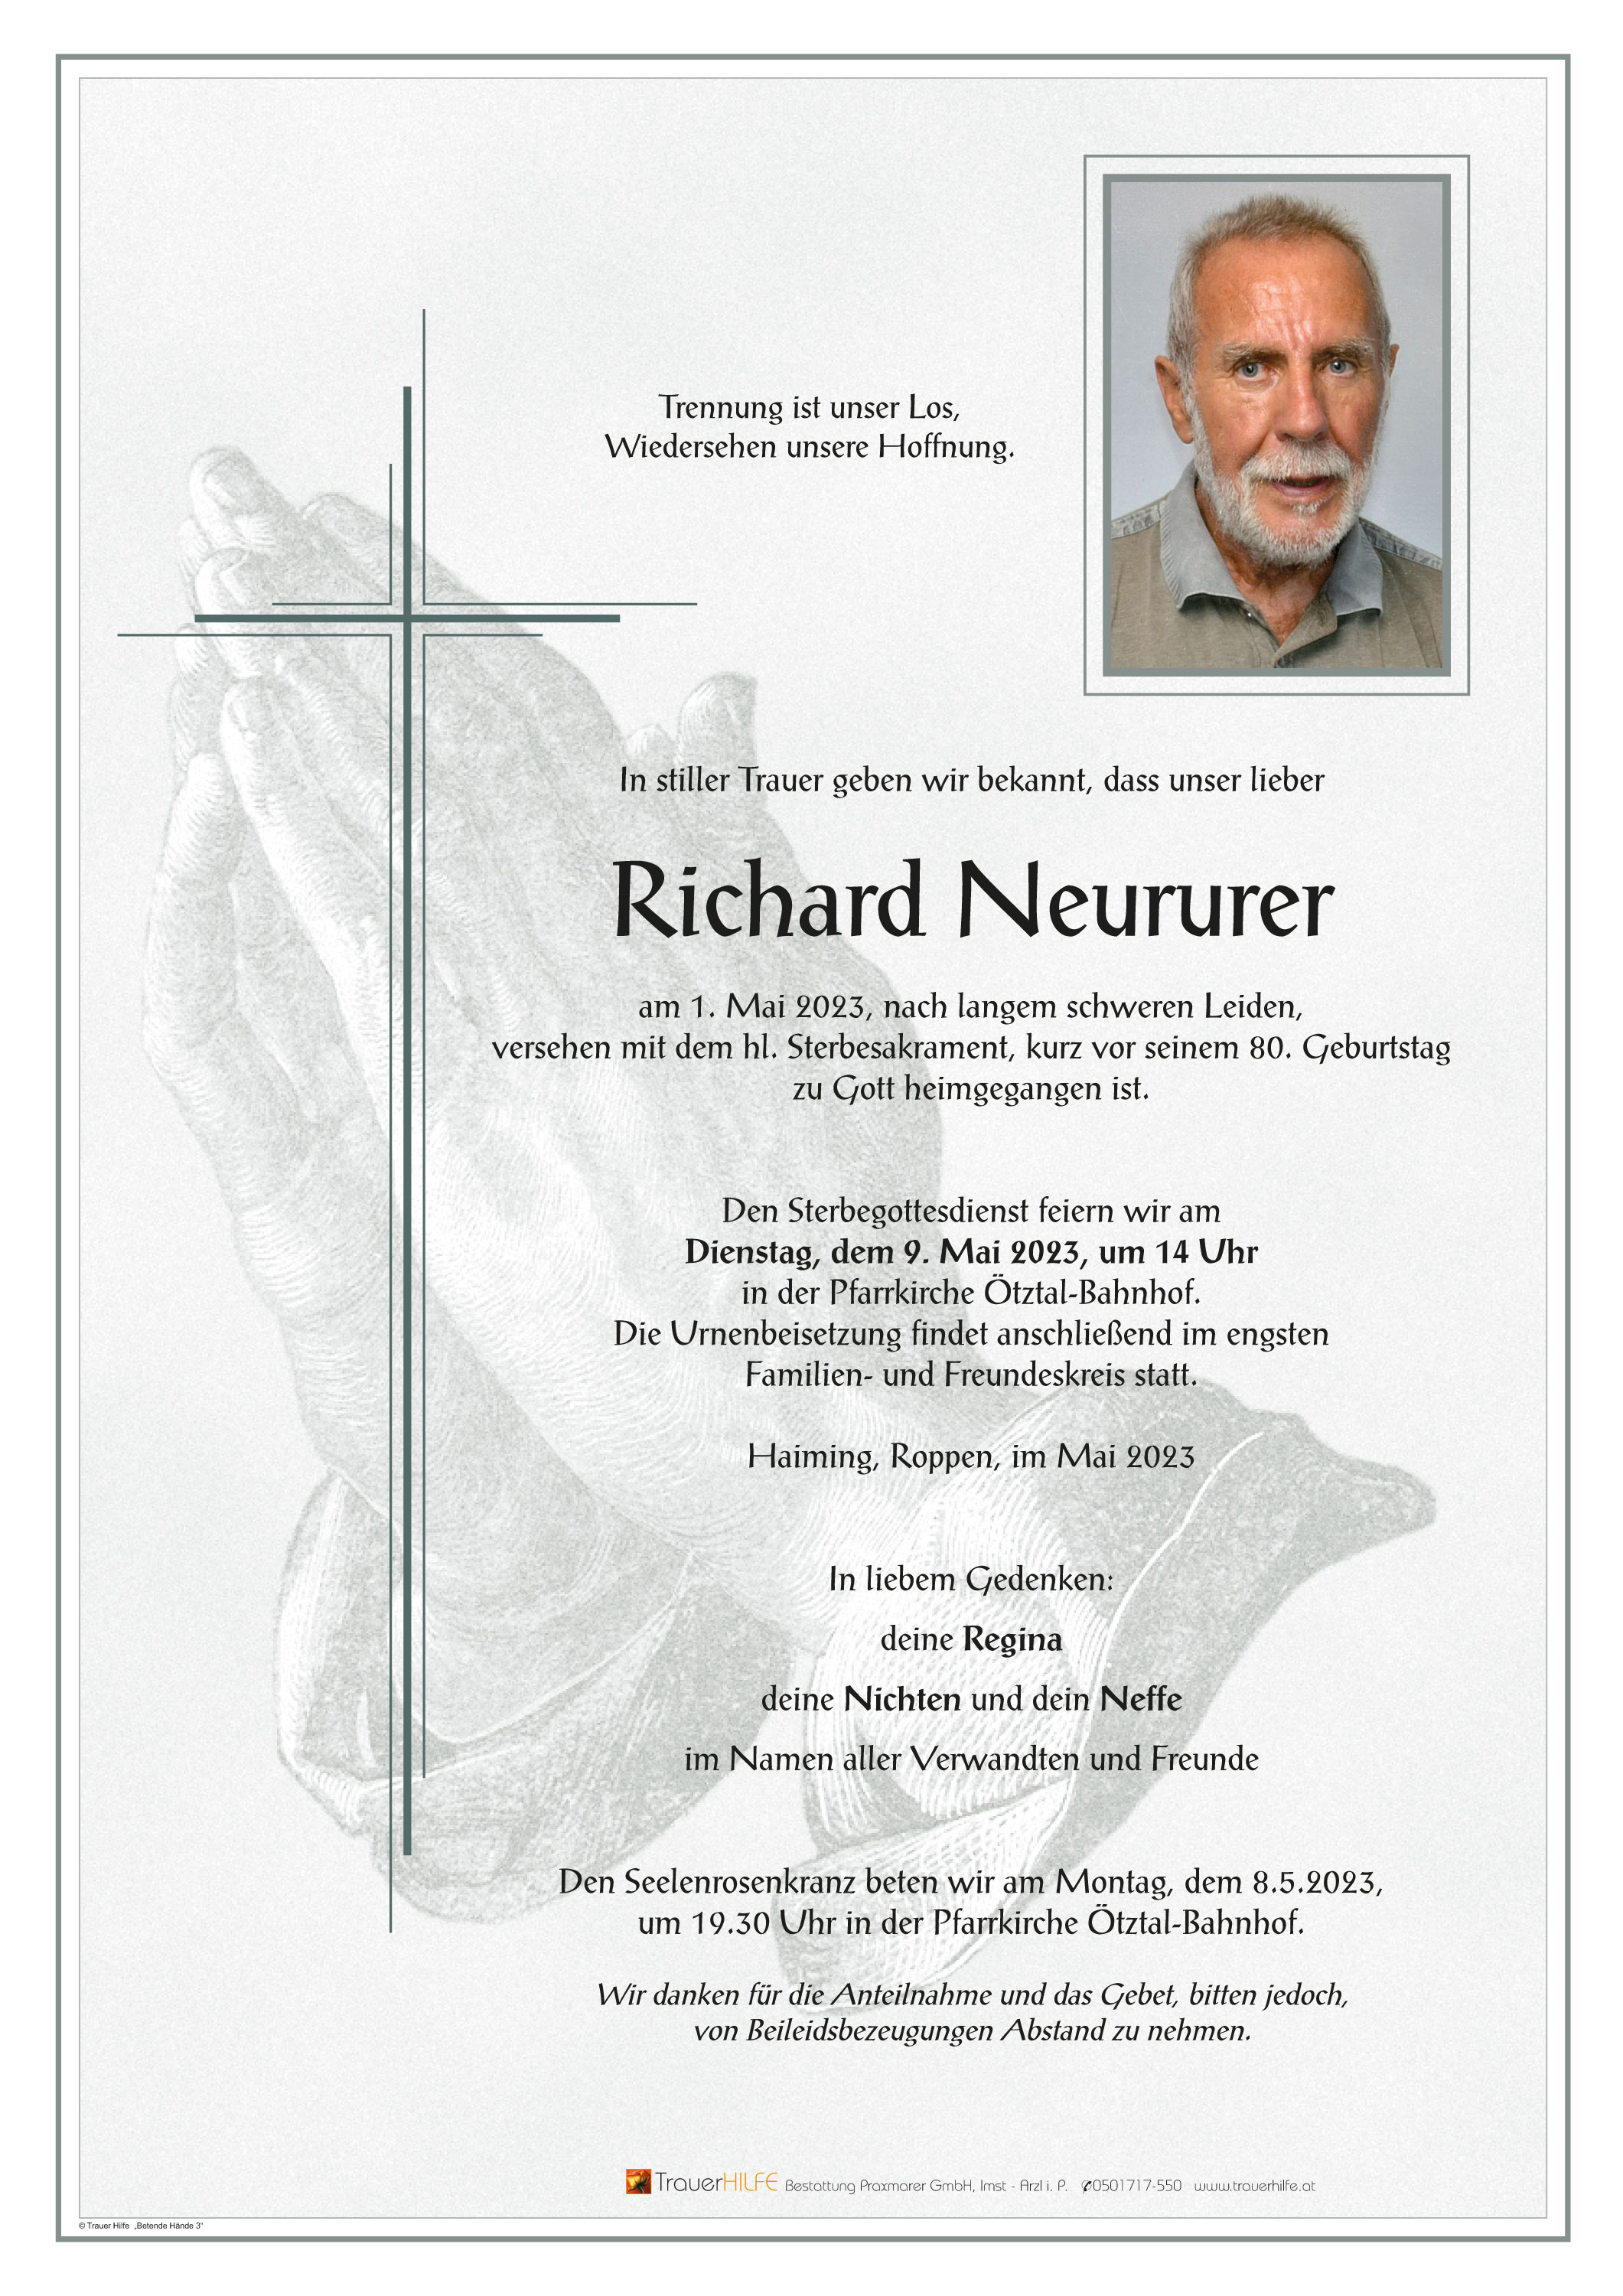 Richard Neururer